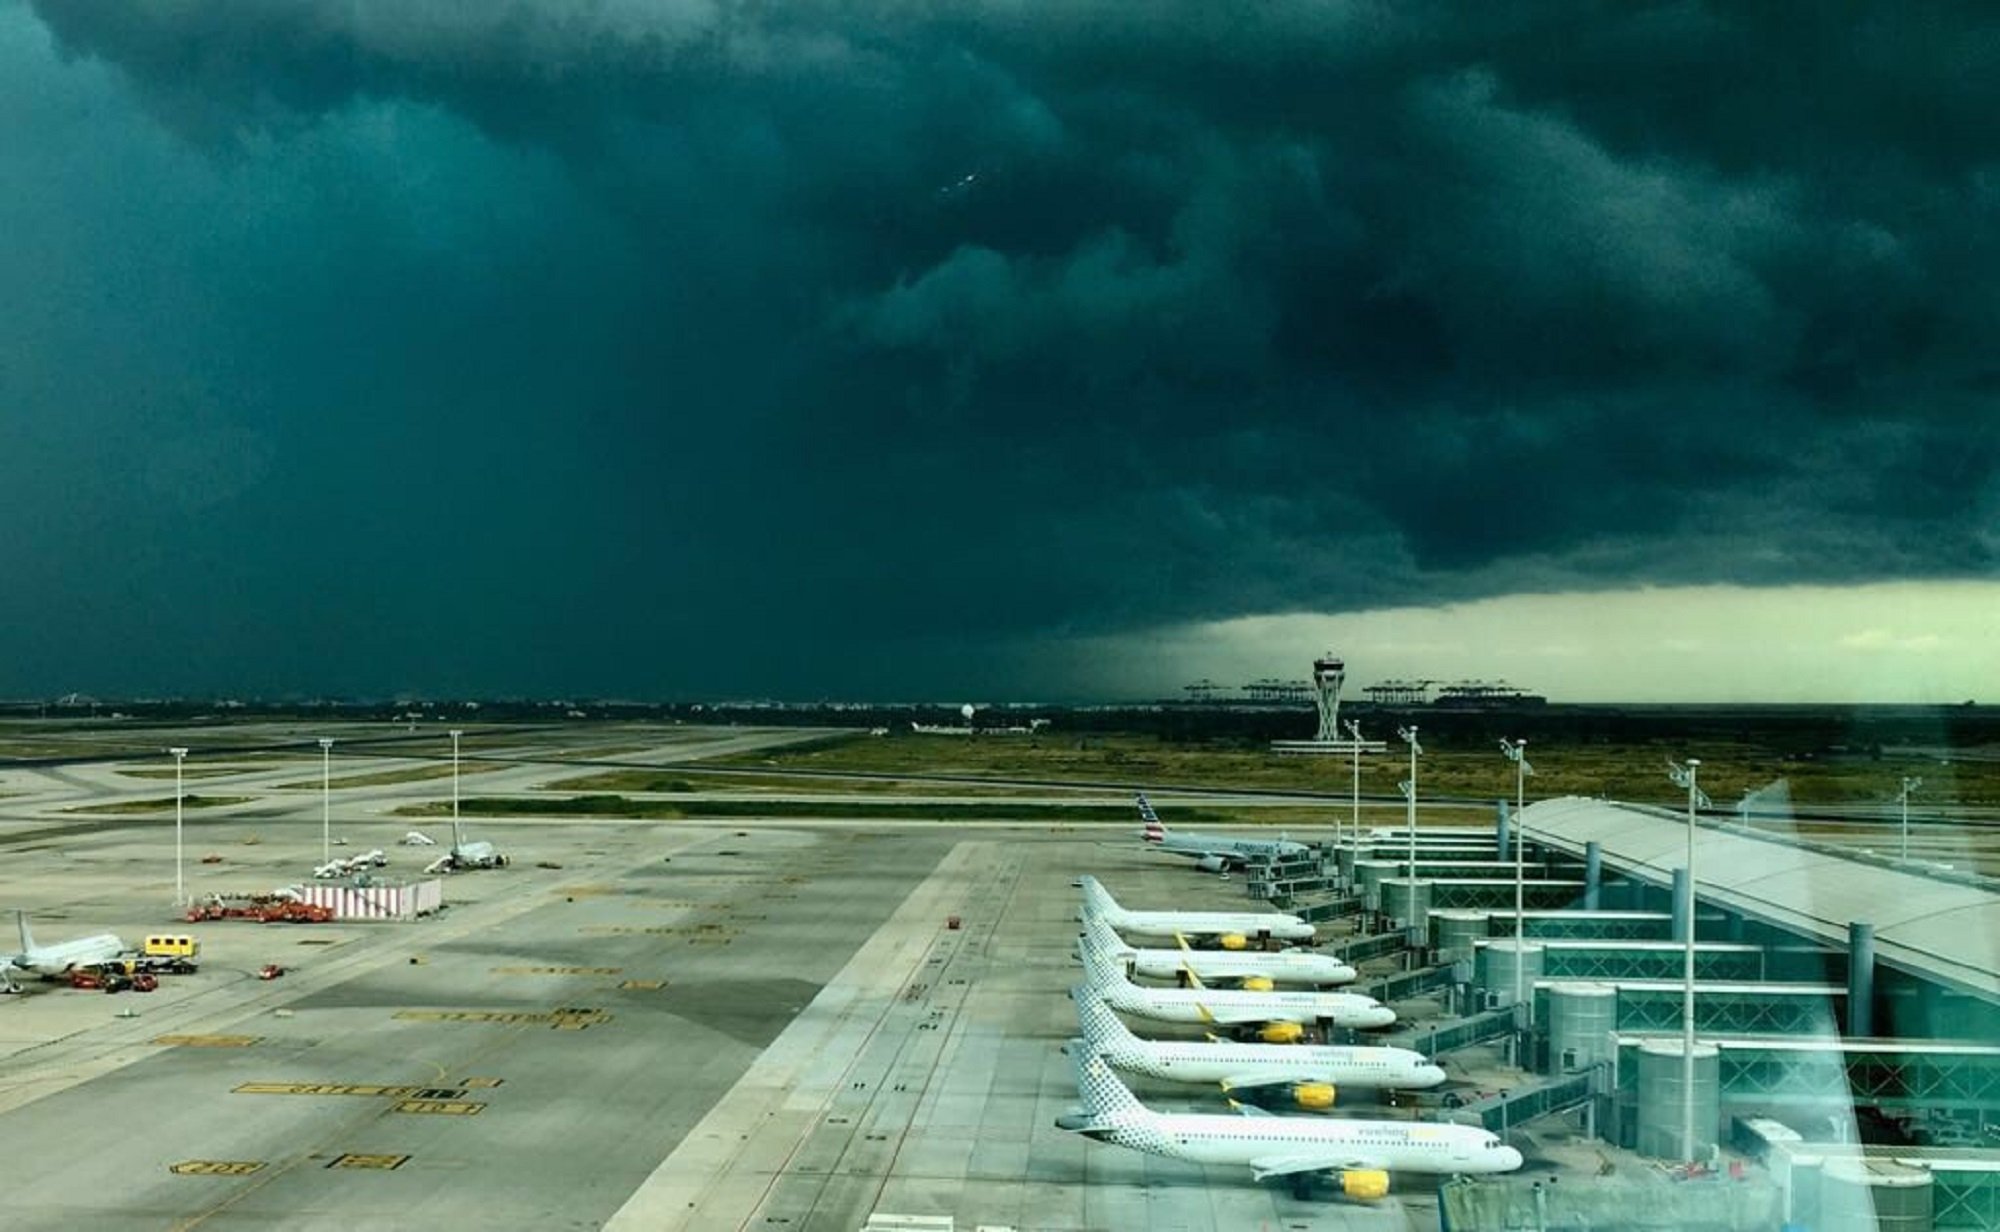 Només el 62% dels vols surten puntuals a l'aeroport del Prat